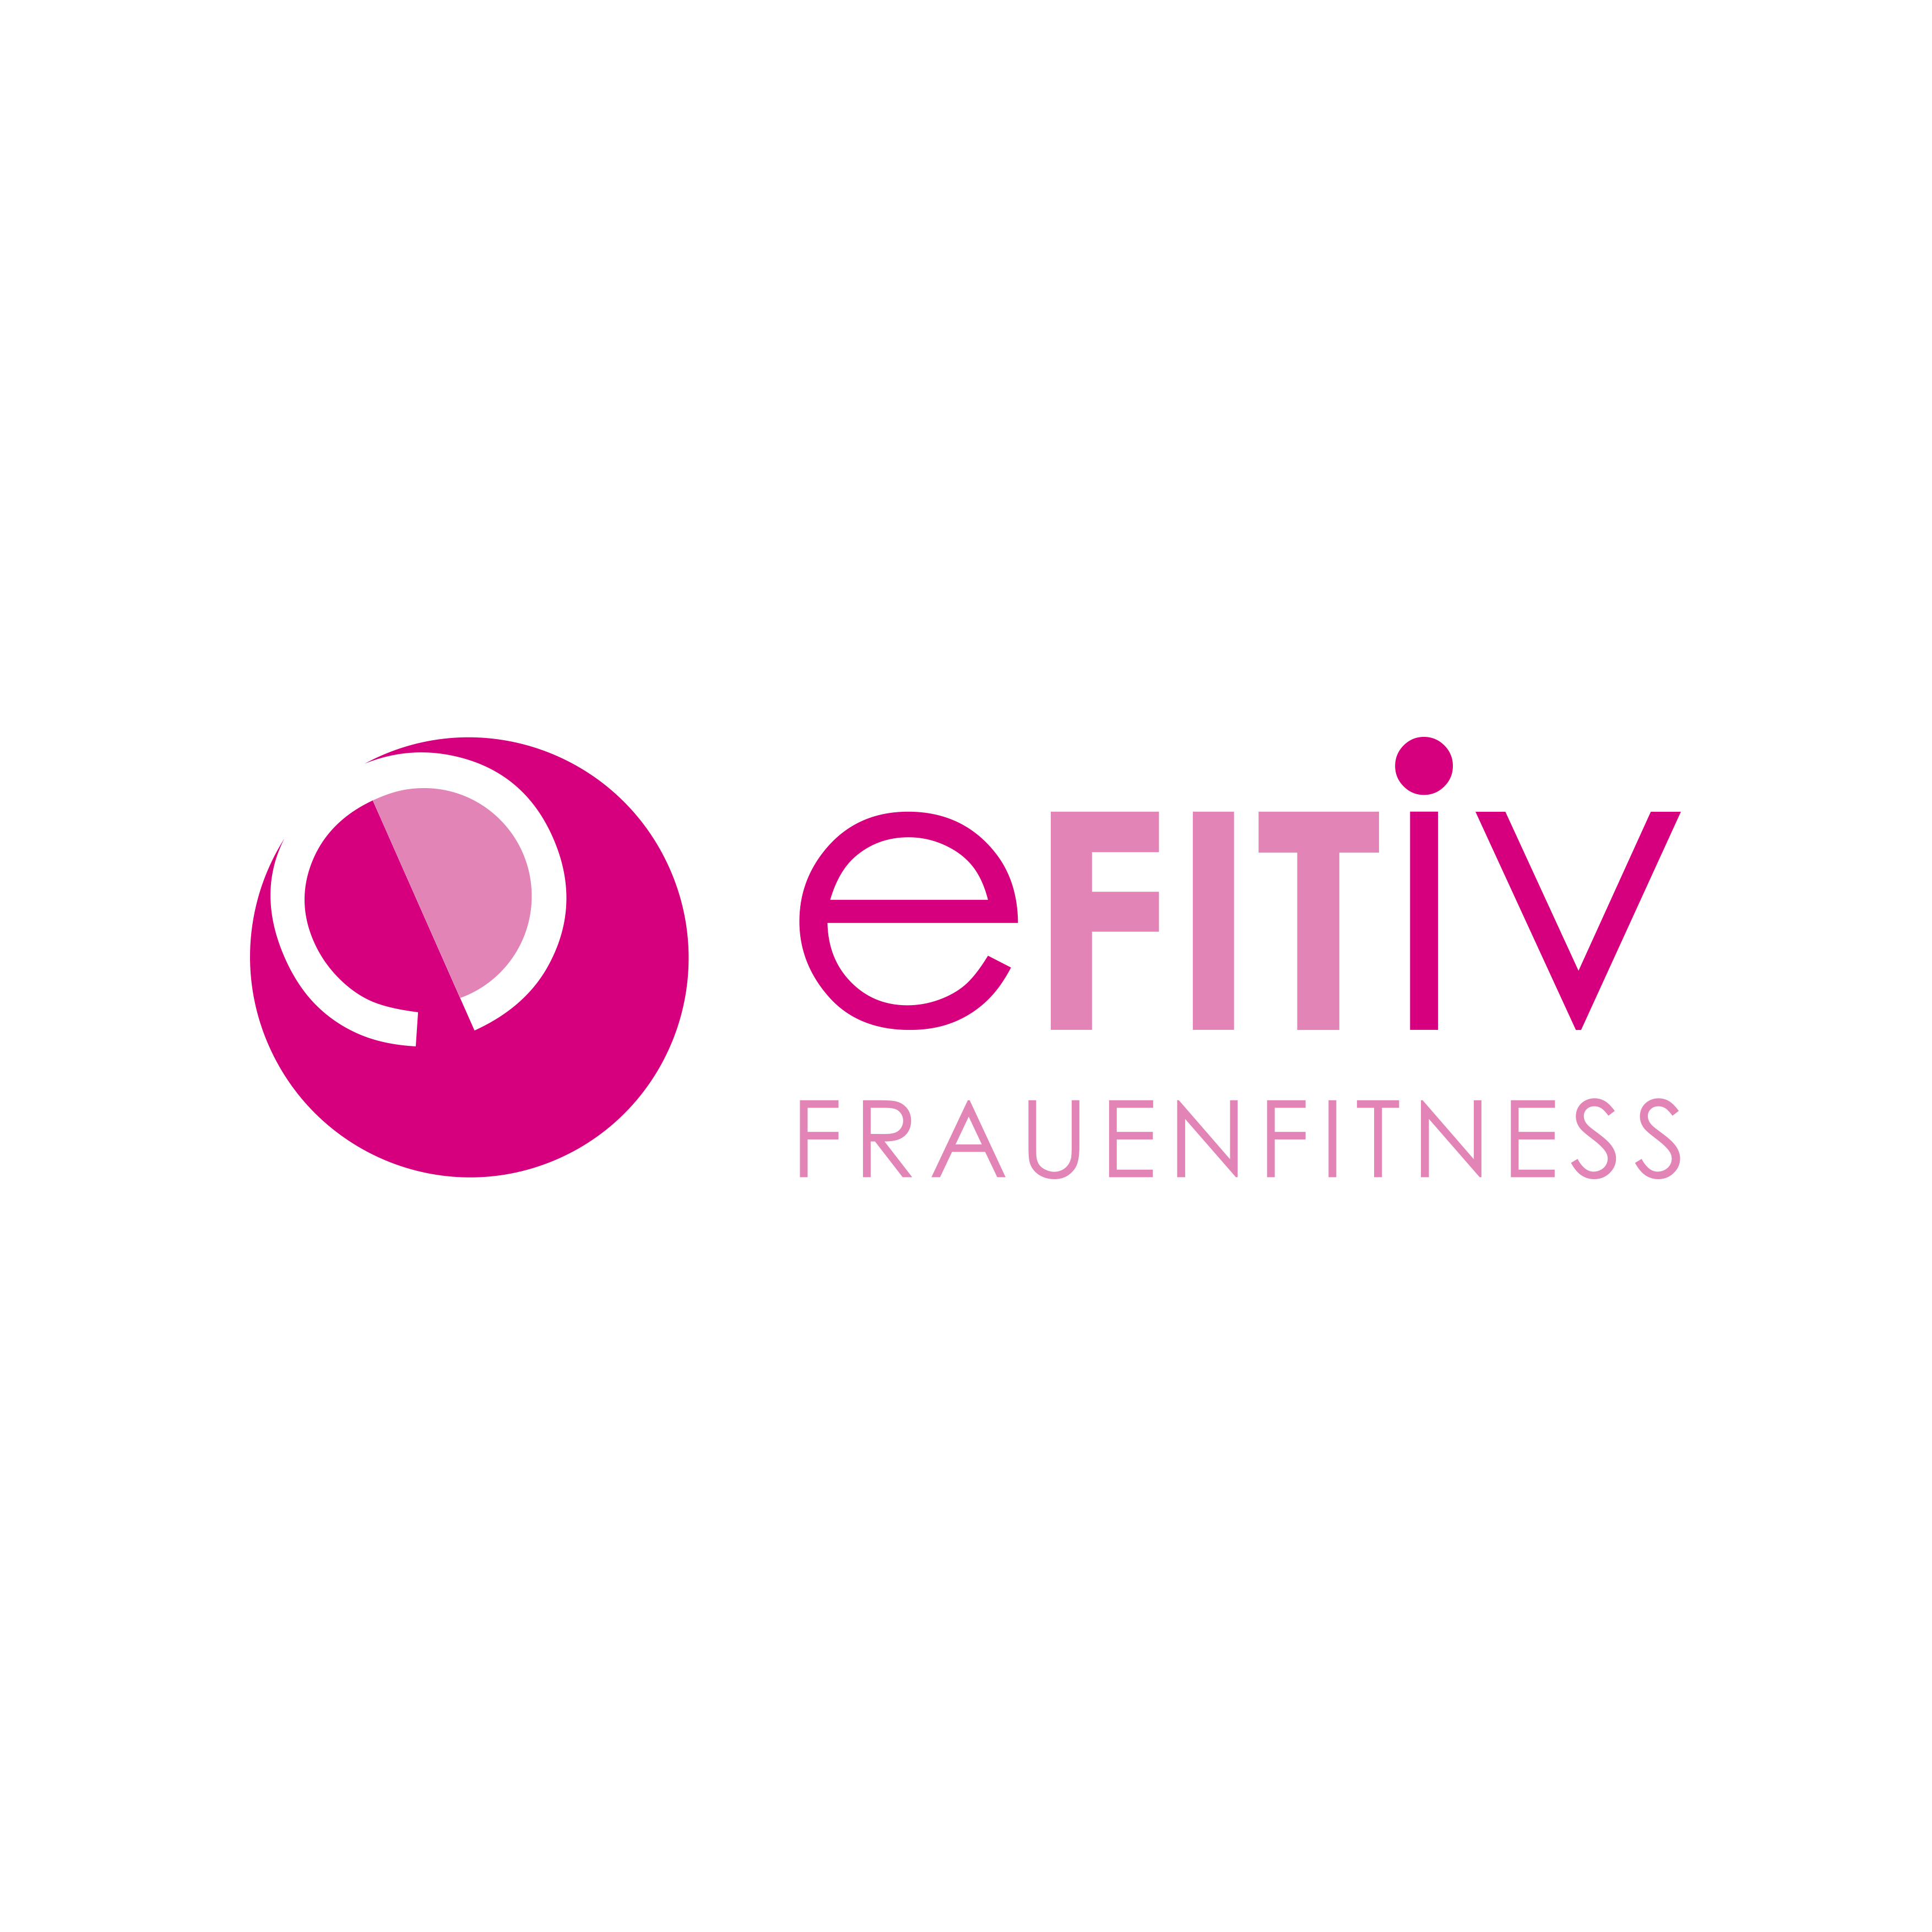 eFITiv Frauenfitness in Speyer - Logo